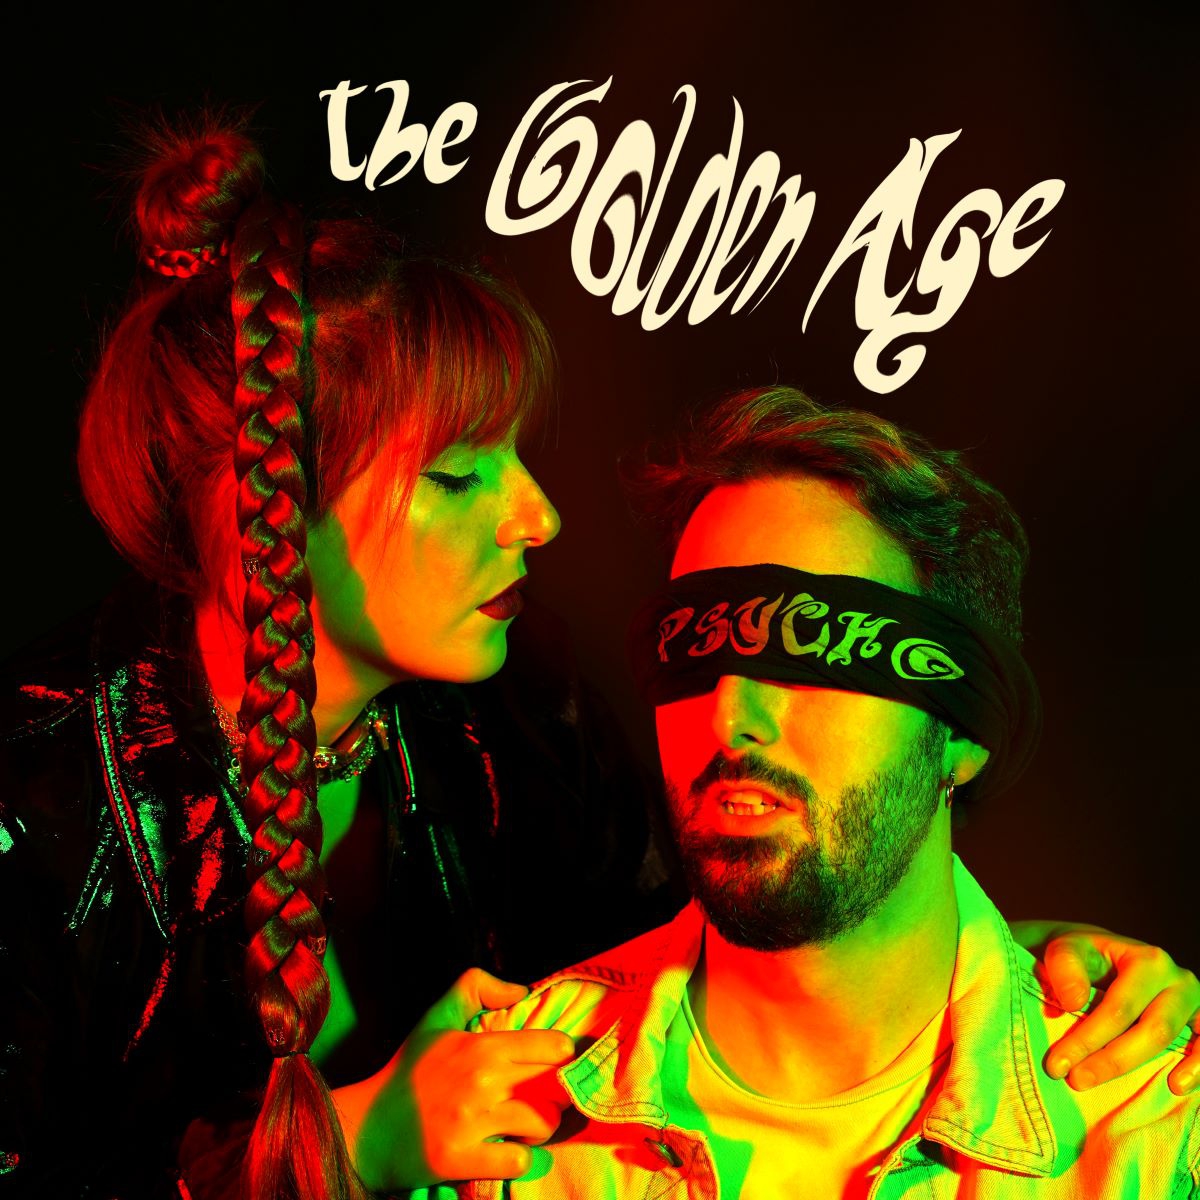 The Golden Age - Il nuovo singolo “Psycho”